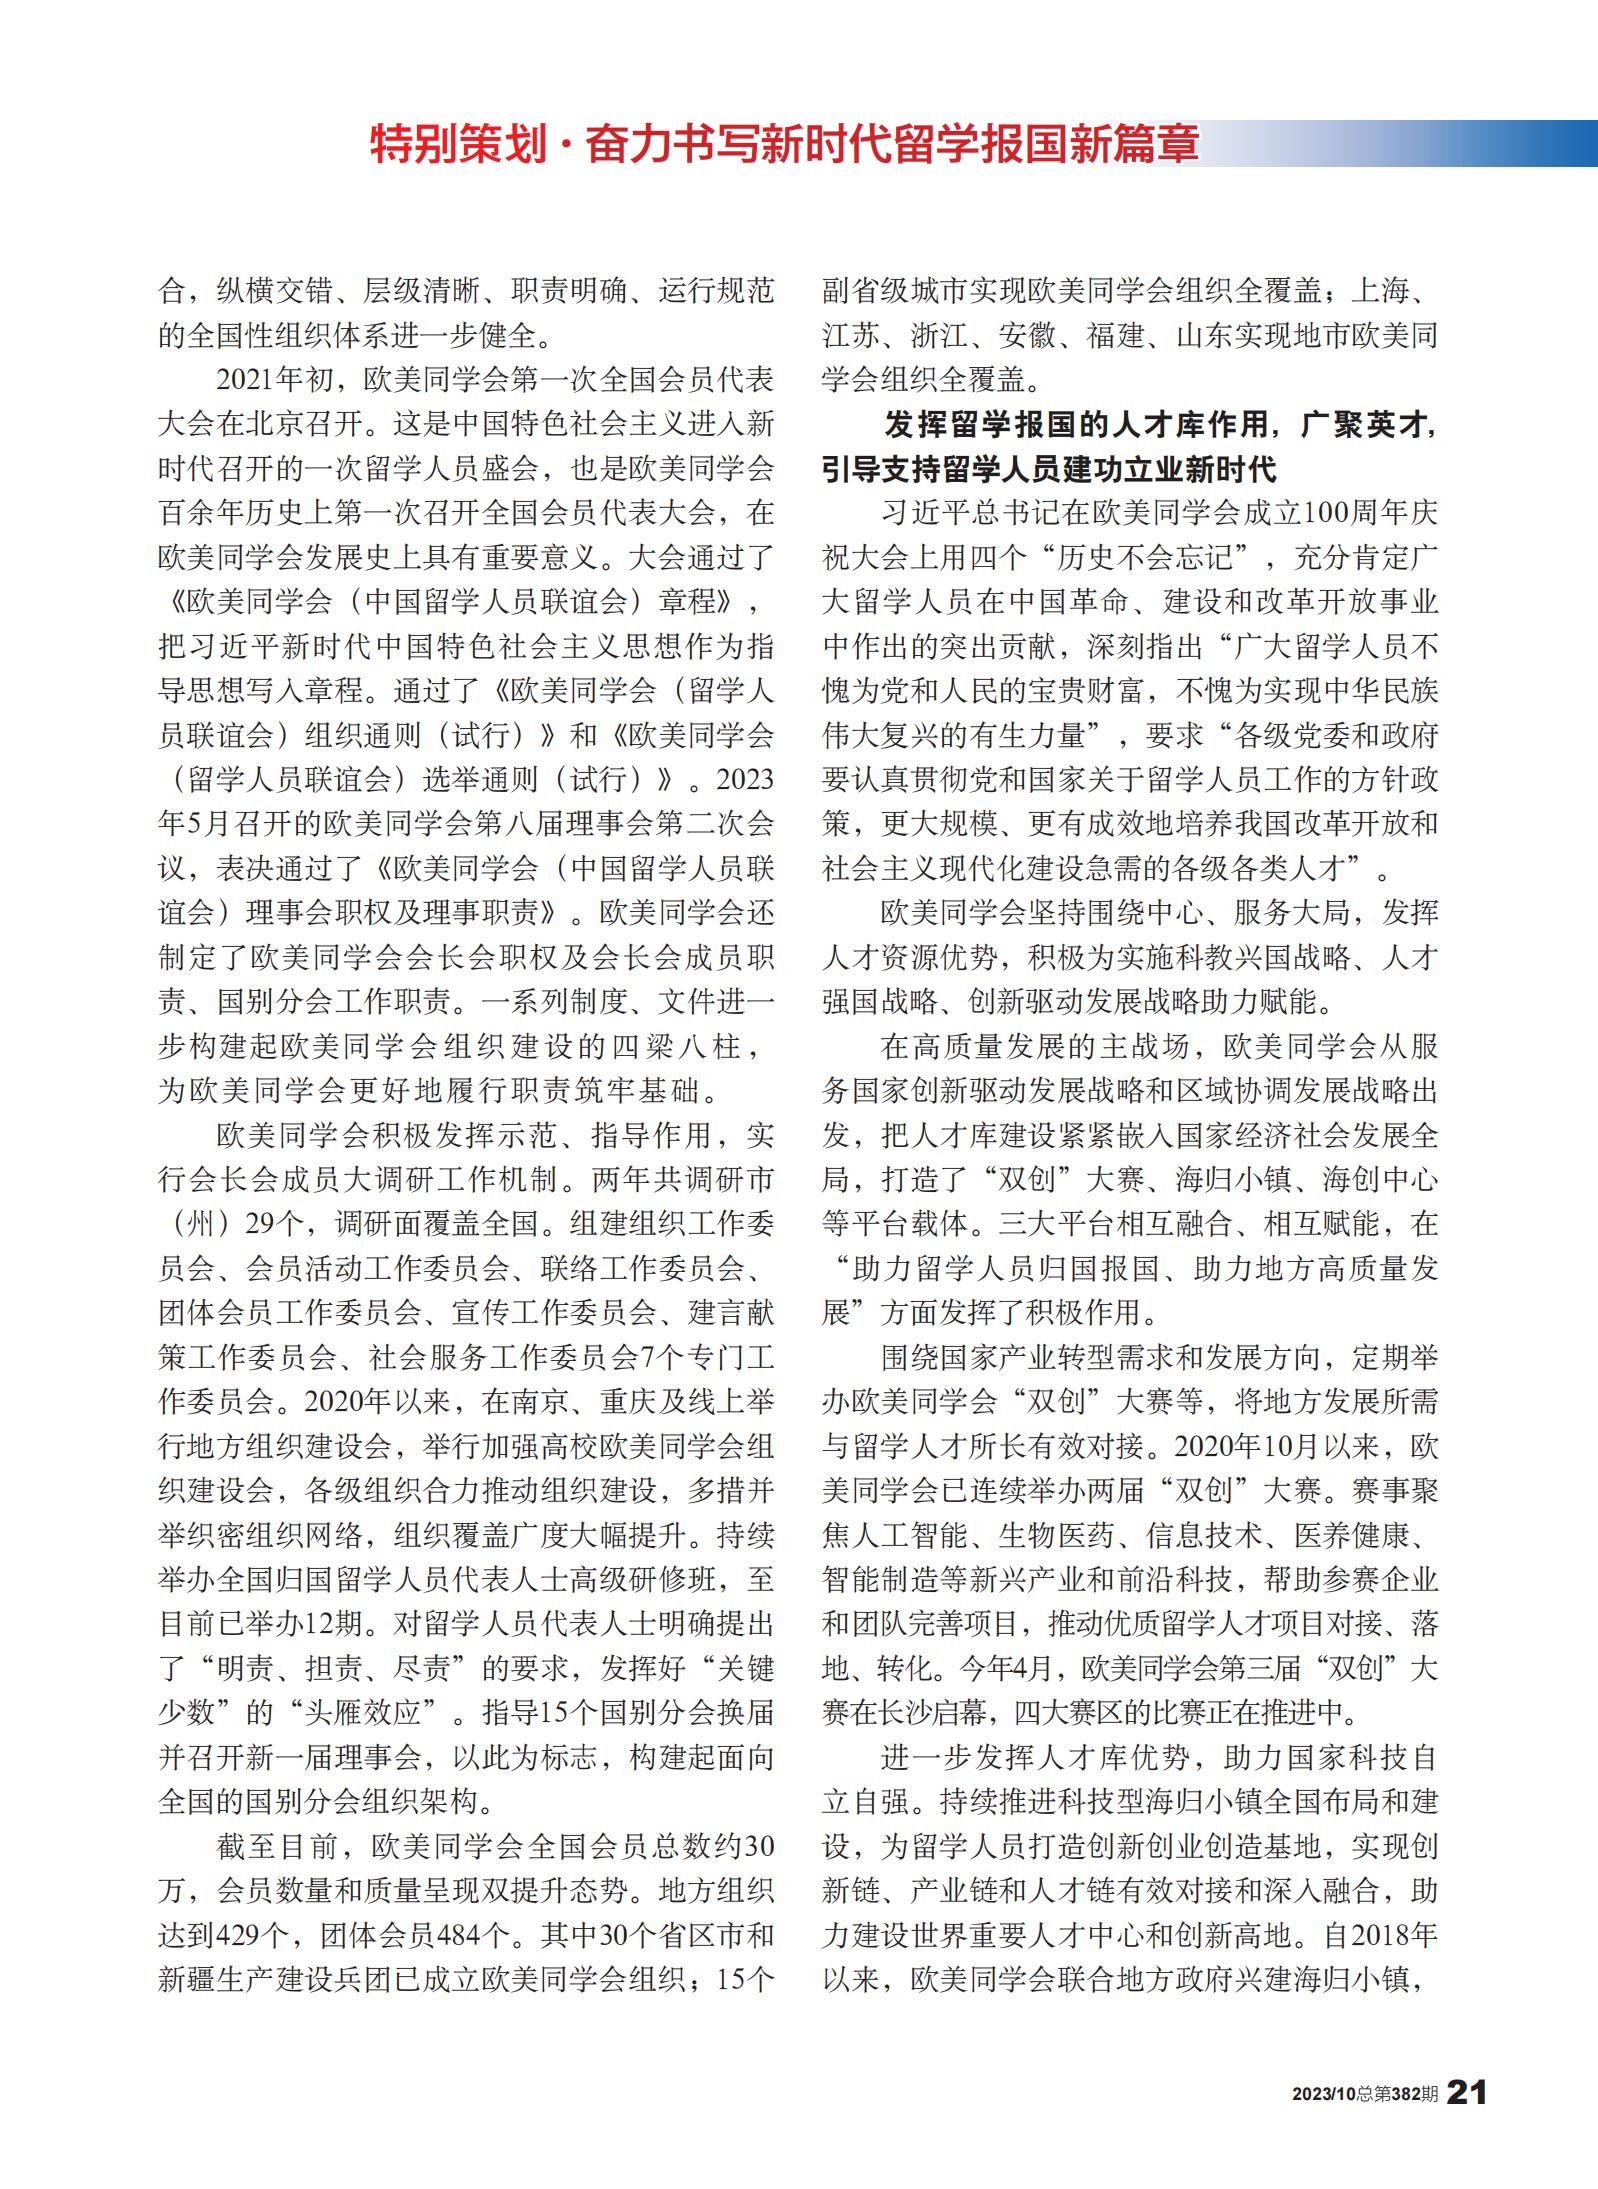 中国统一战线杂志专题报道欧美同学会成立110周年